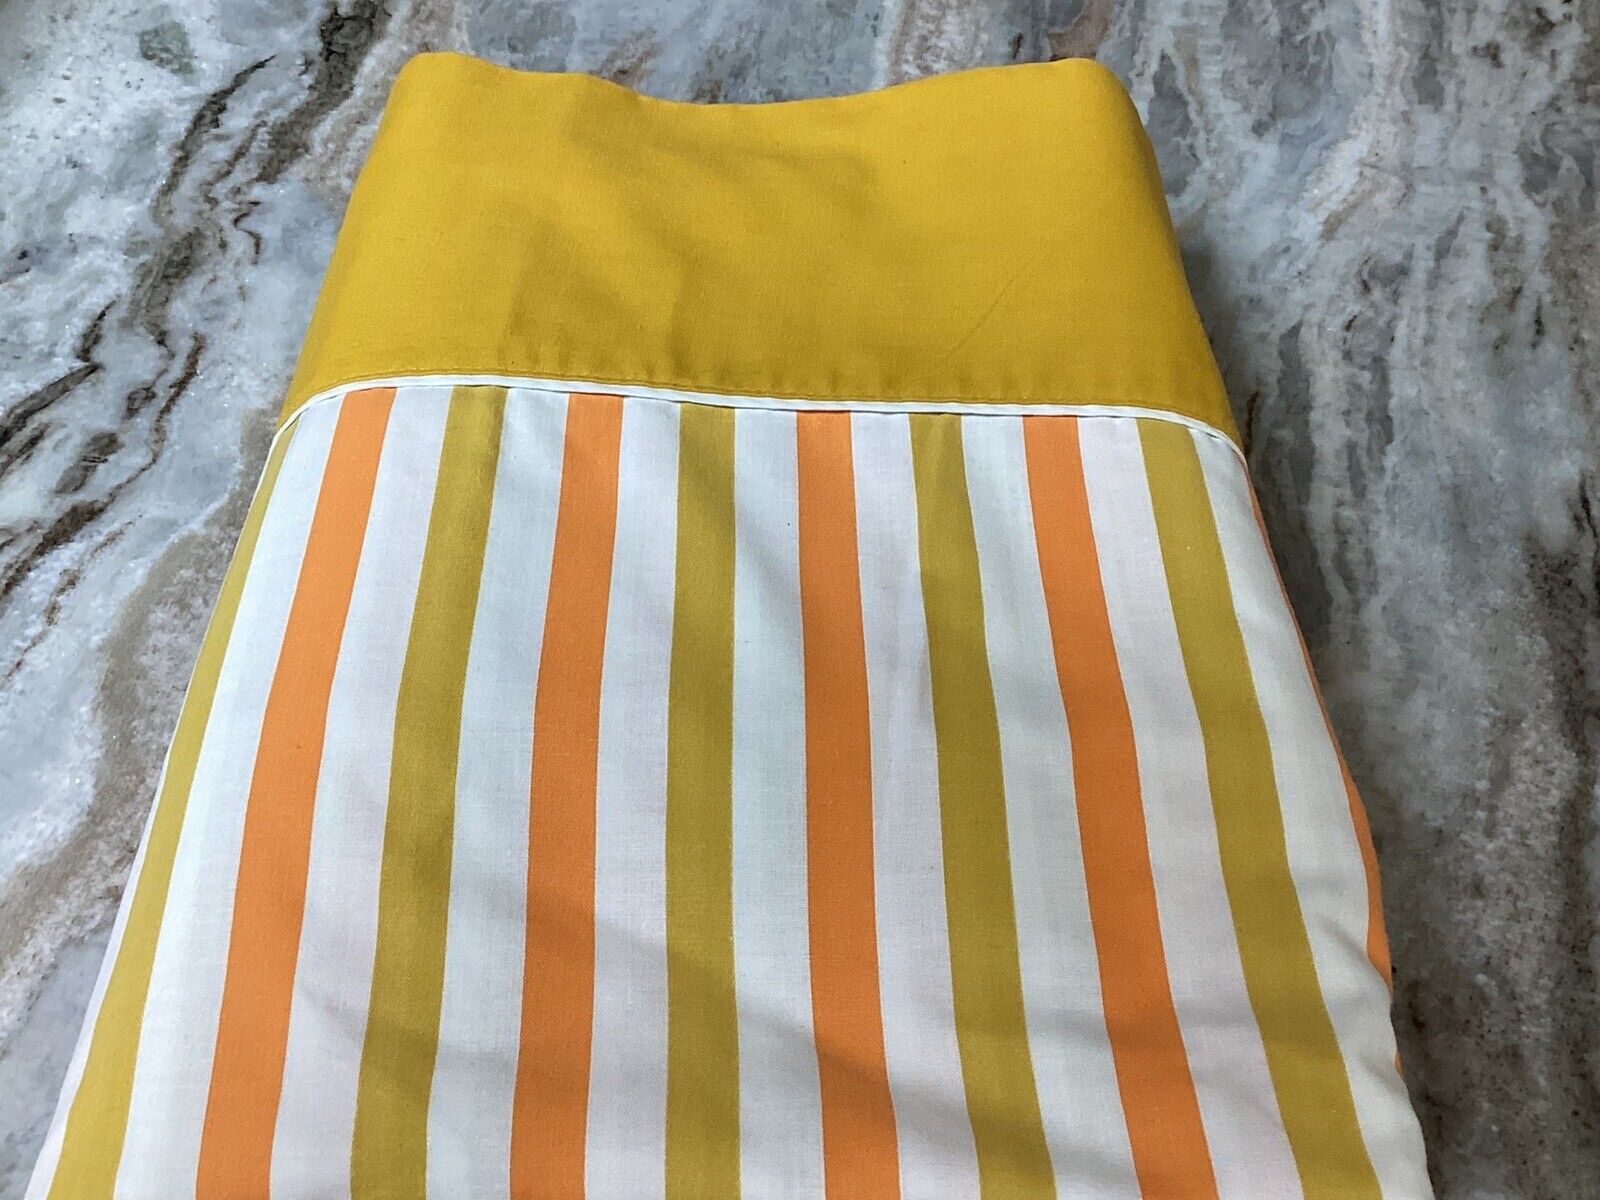 VTG Penny’s Stripped Double/Full Flat Sheet-VGC-Orange, Mustard & White